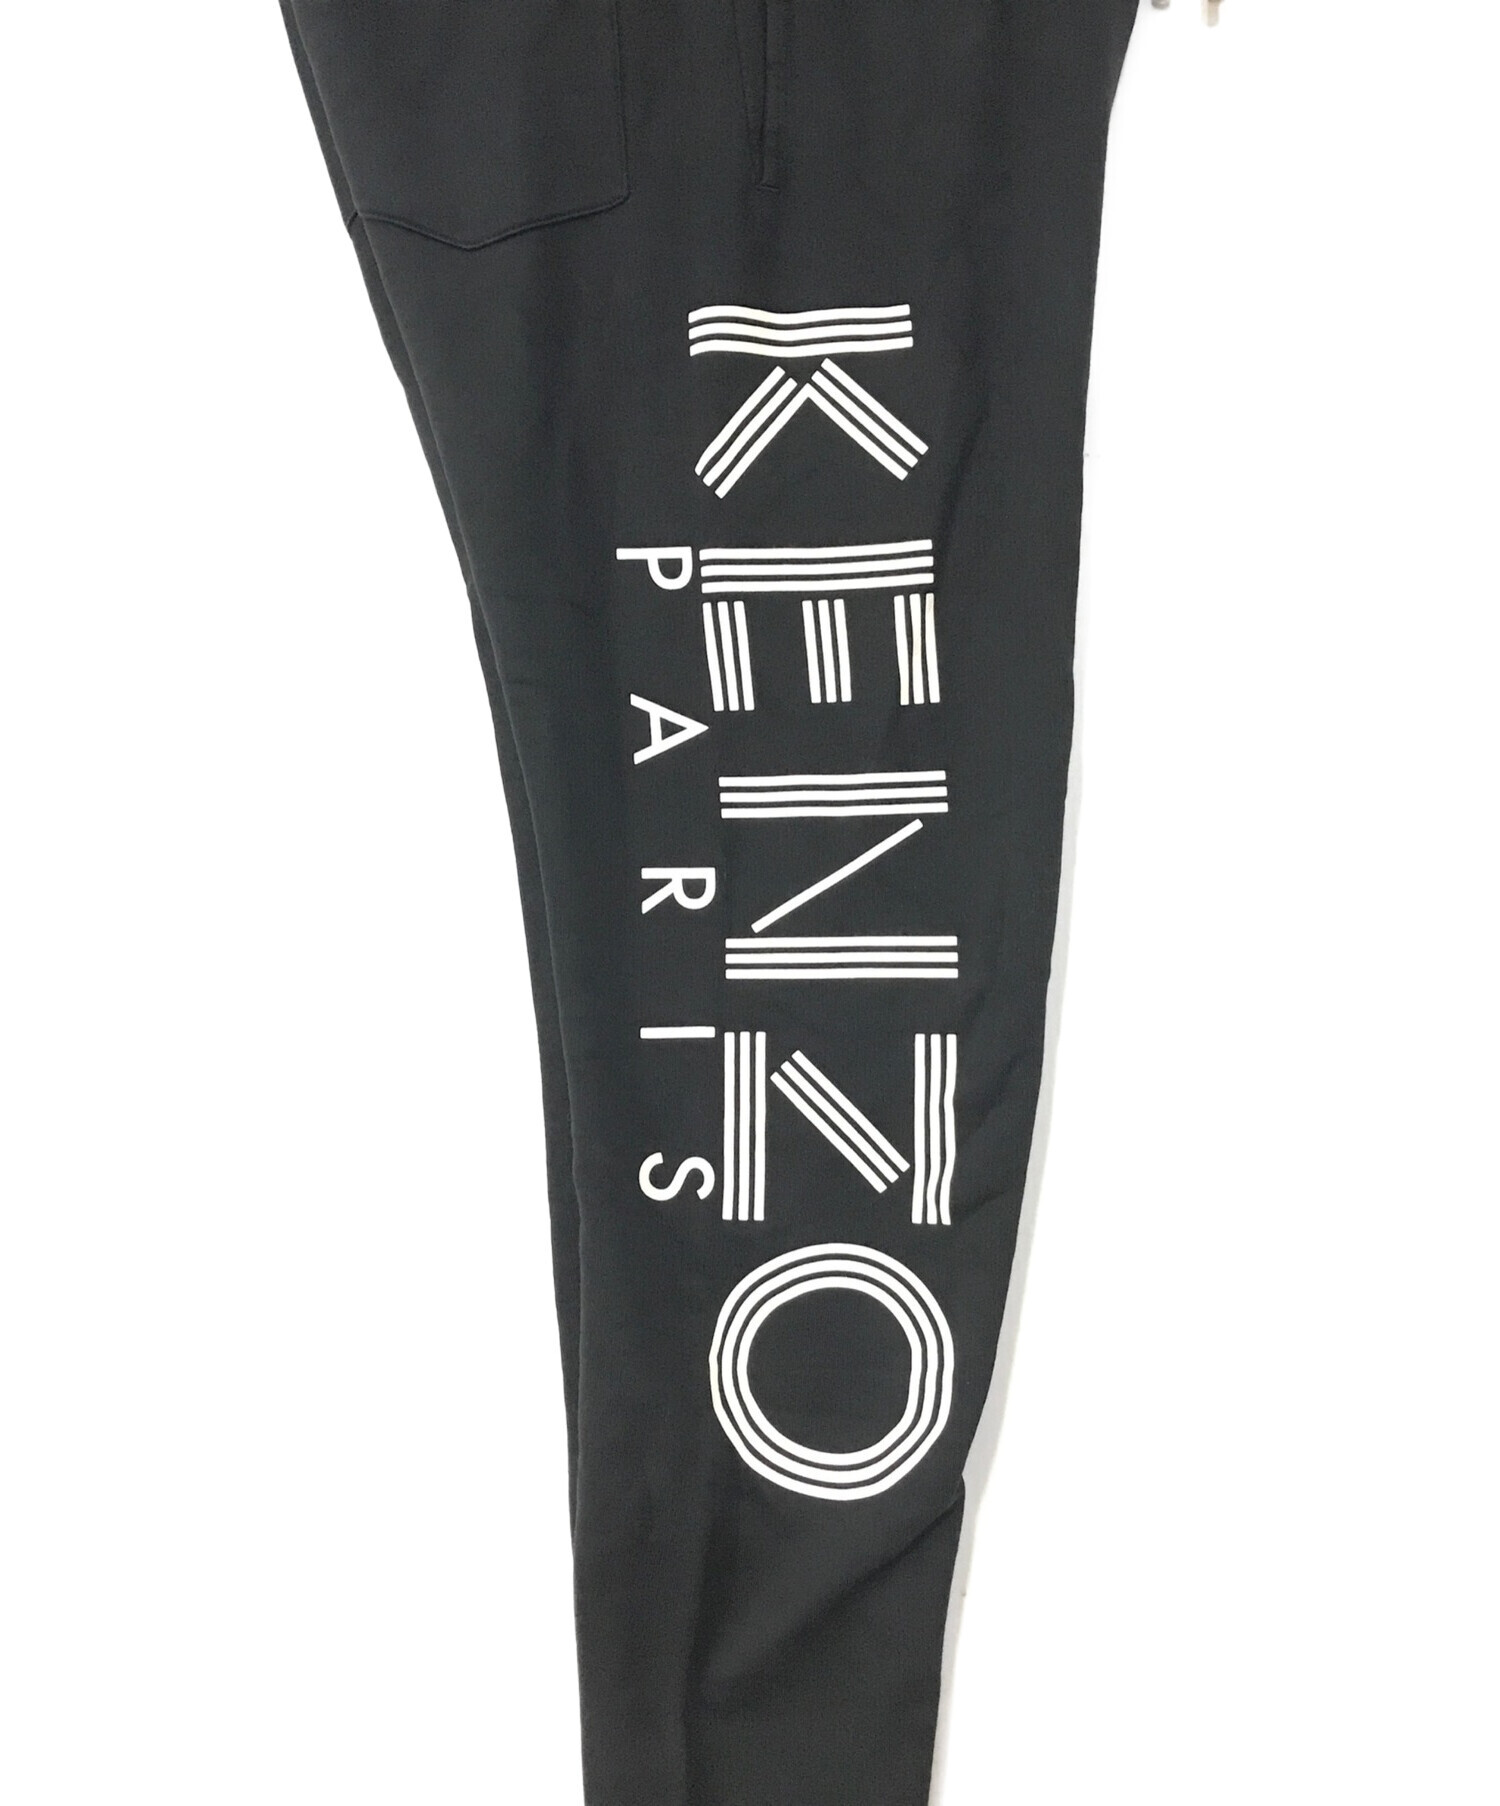 KENZO (ケンゾー) ロゴスウェットパンツ ブラック サイズ:M